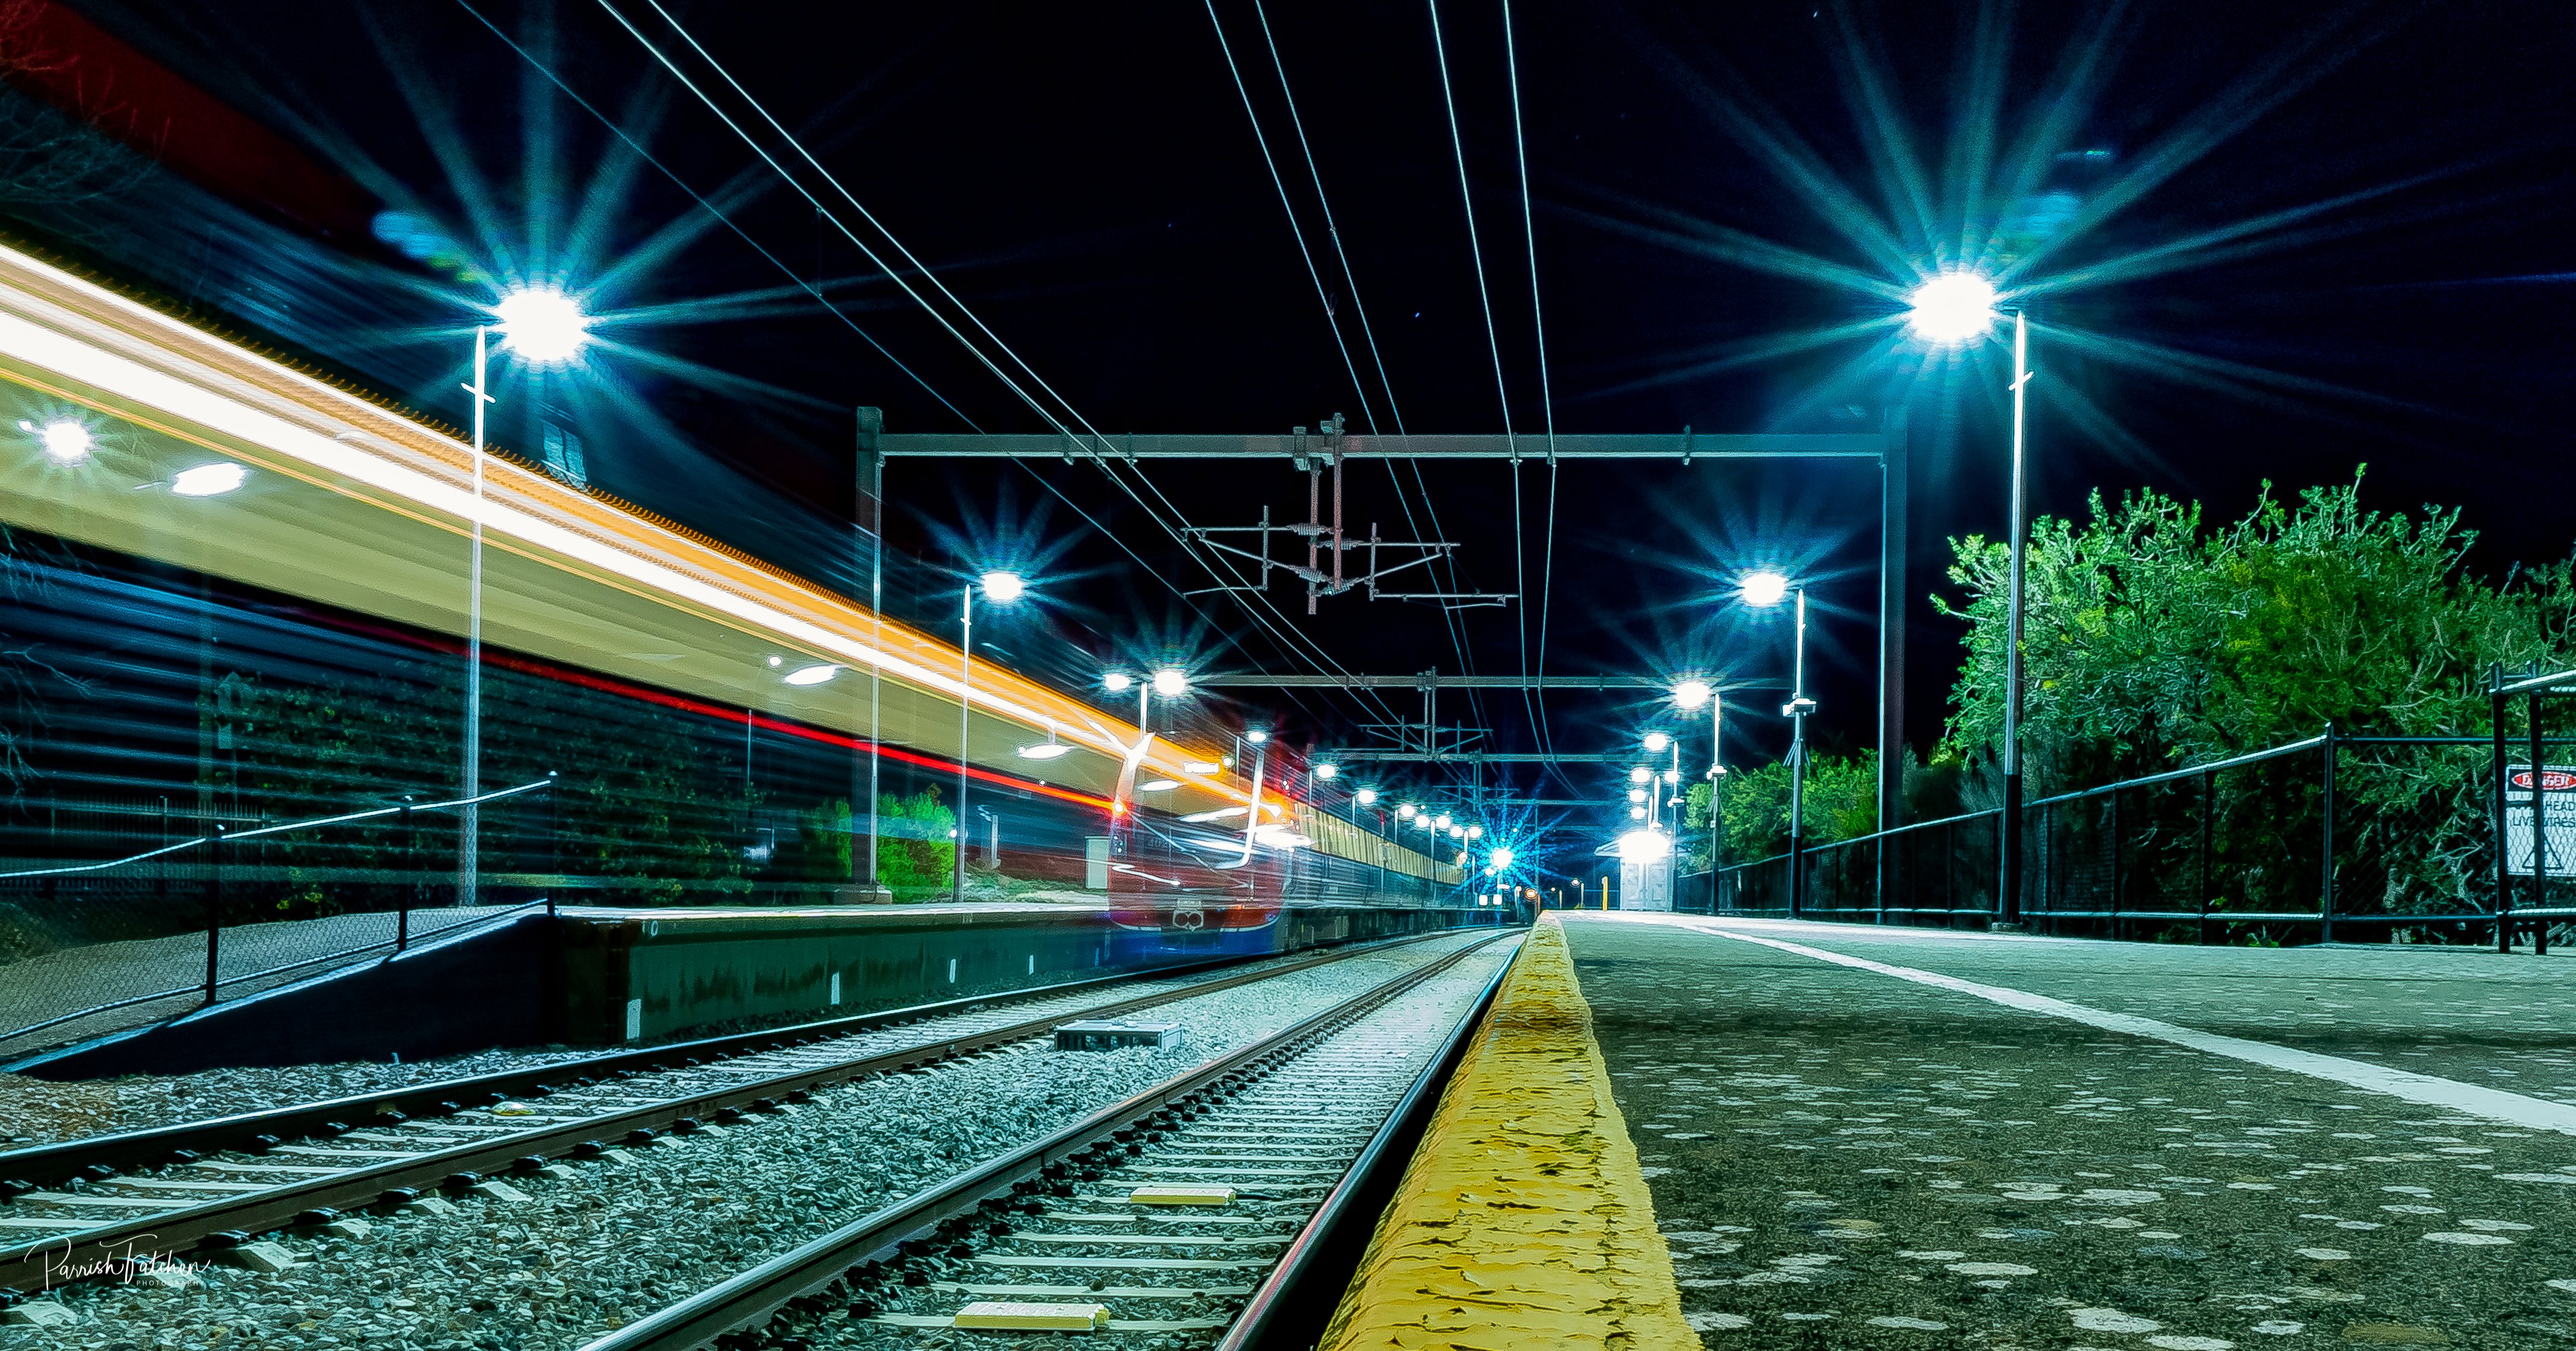 Трип жд. Станция Новолипецк железная дорога. Ригельное освещение ЖД станций. Вокзал ночью. Ночной перрон вокзала.